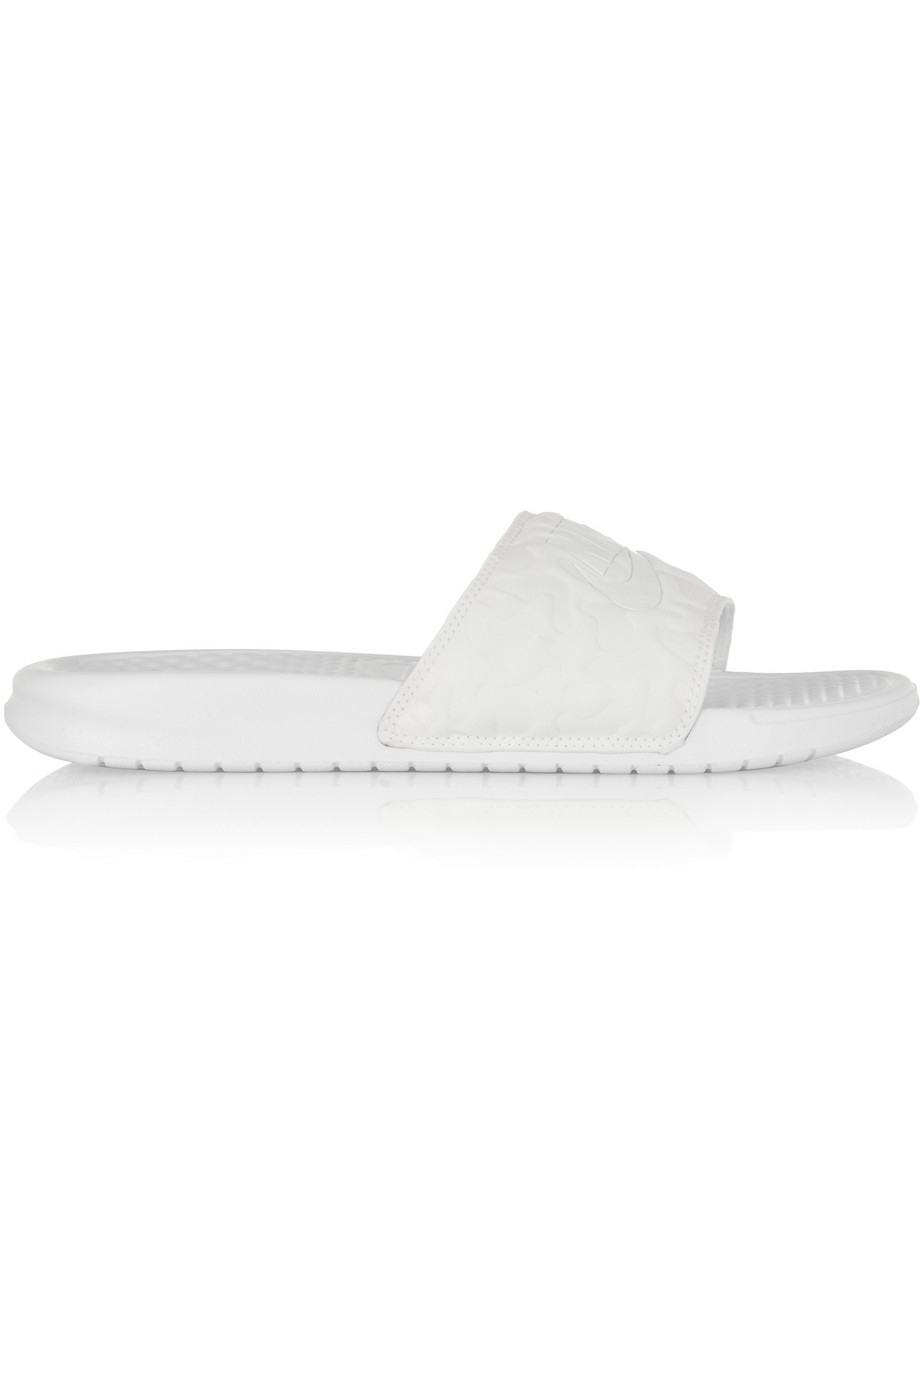 Lyst - Nike Benassi Rubber Slides in White